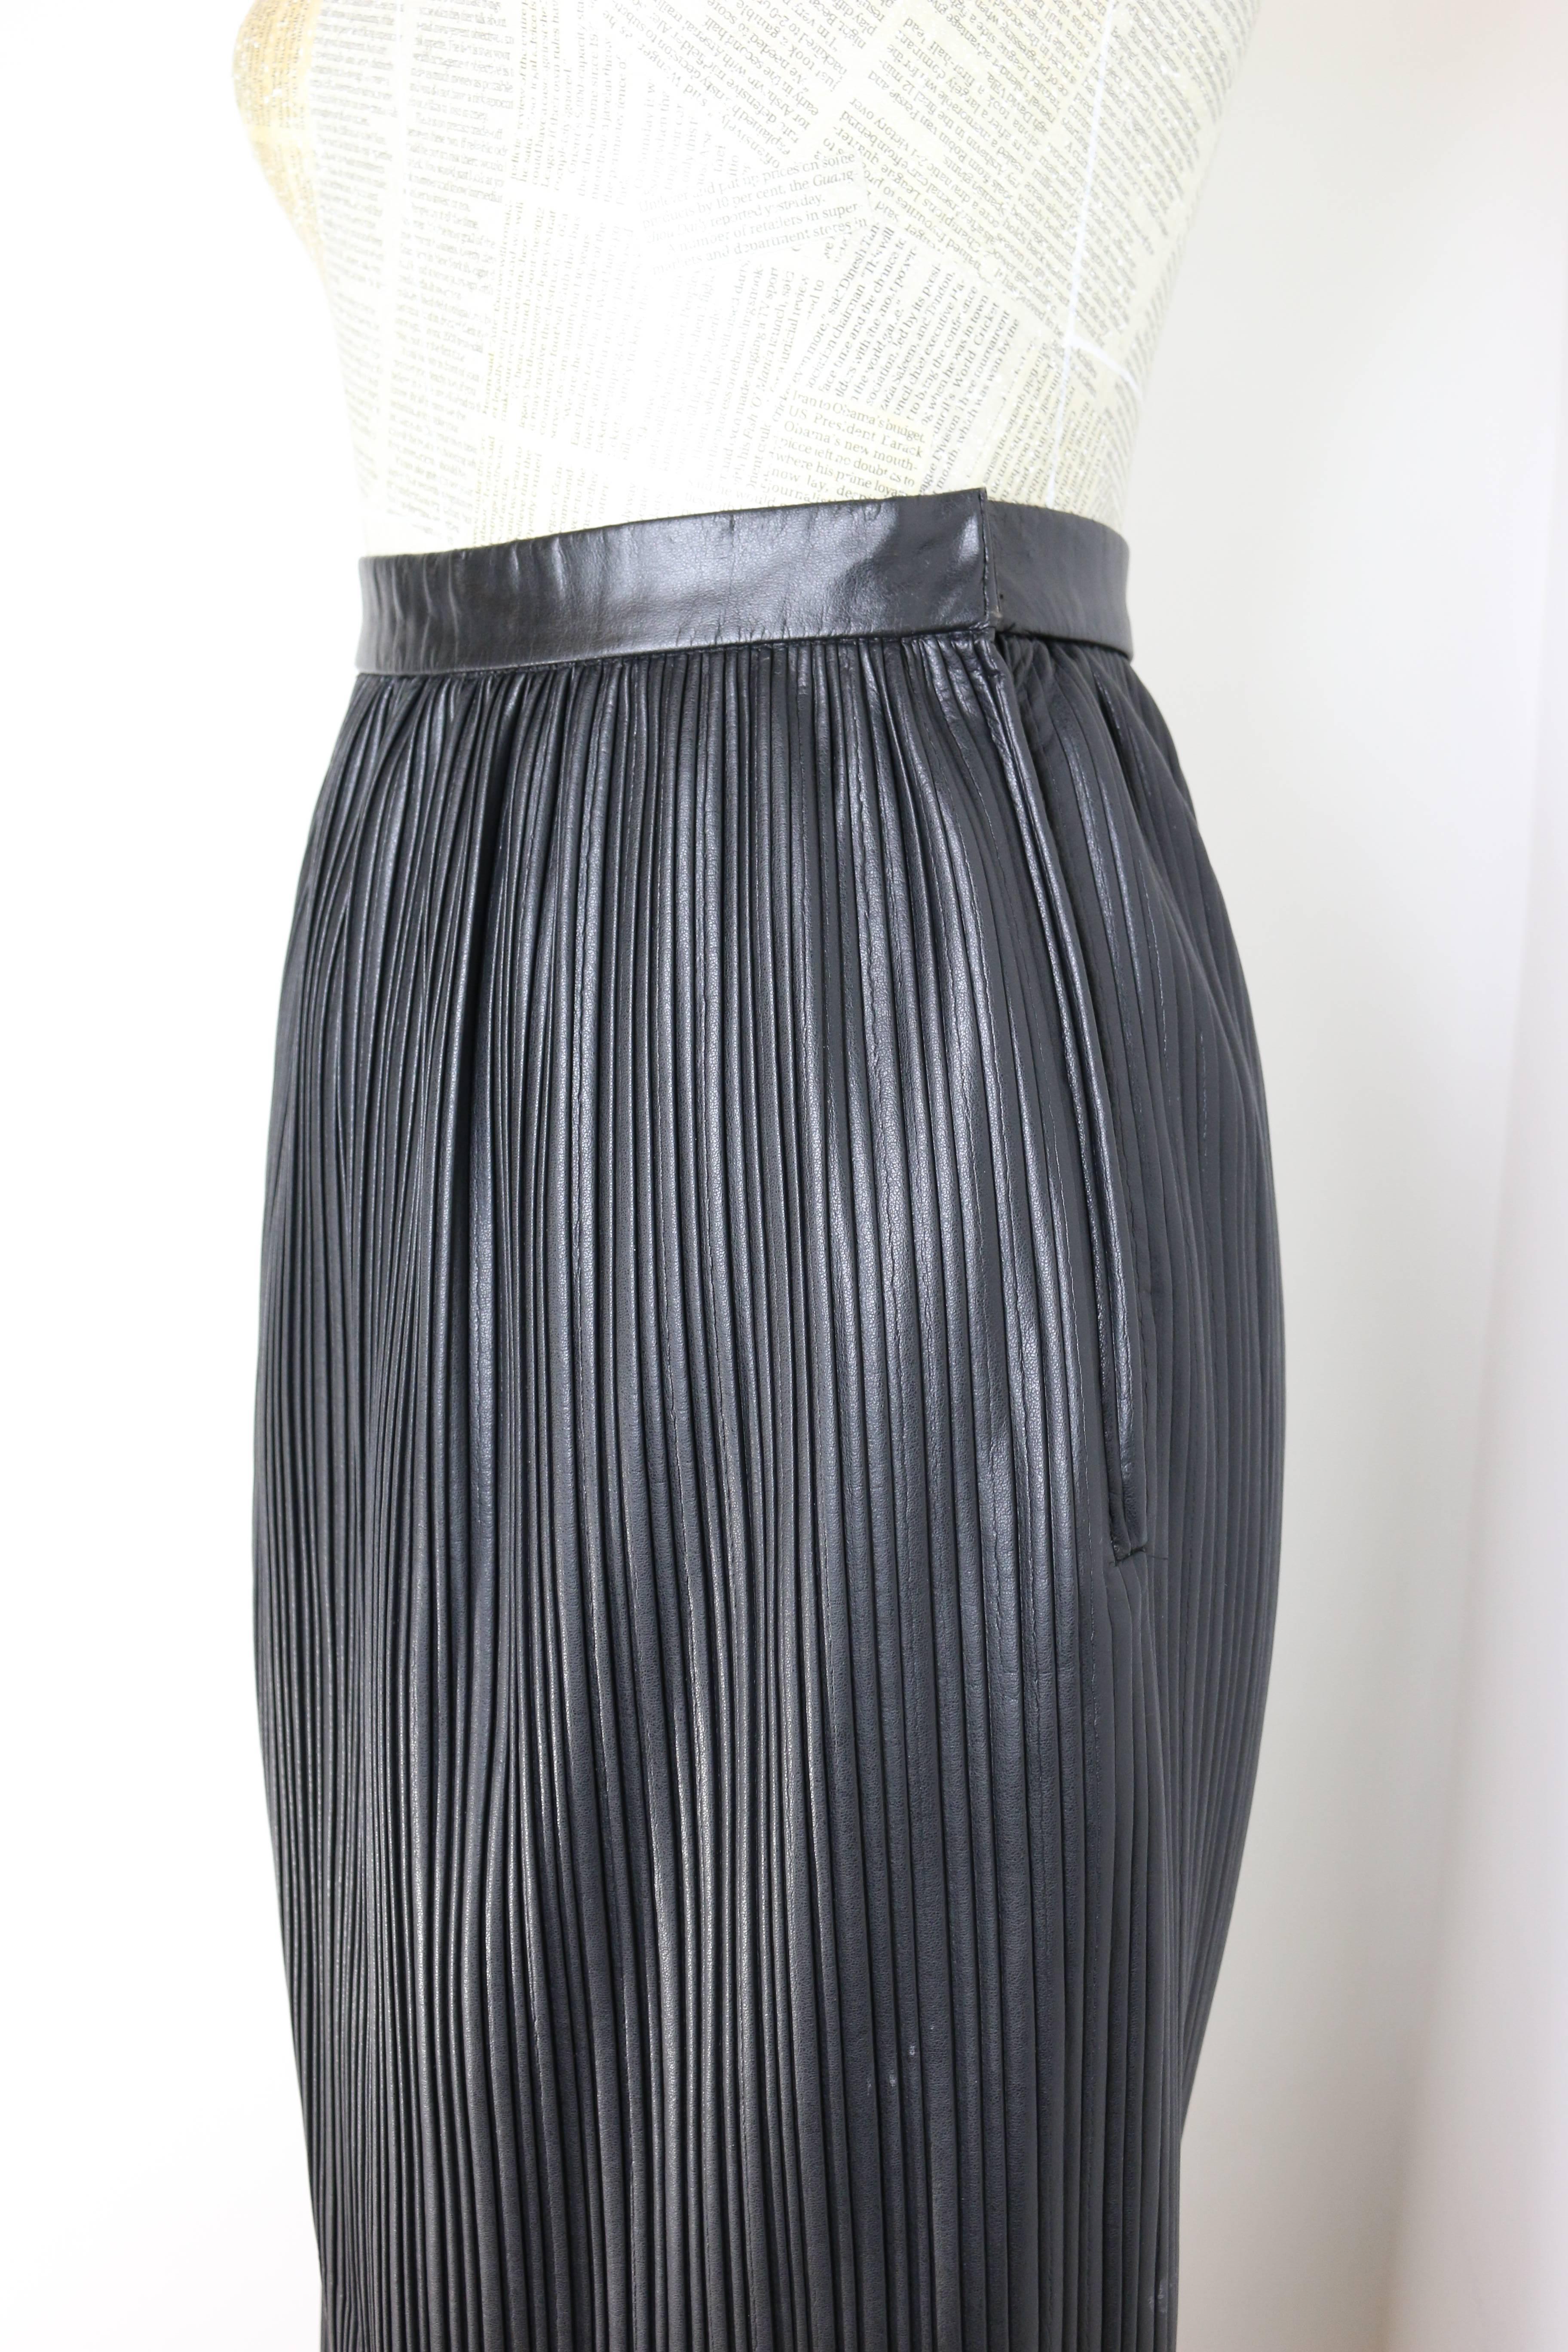 - Vintage 90s Japanese designer Deco Sugai black leather long pleated skirt. Cette jupe plissée en cuir est très unique et rare. 

- Il se marie avec tout, du t-shirt à la chemise, en passant par le chemisier et la veste !

- Taille 9 Japon. 

-